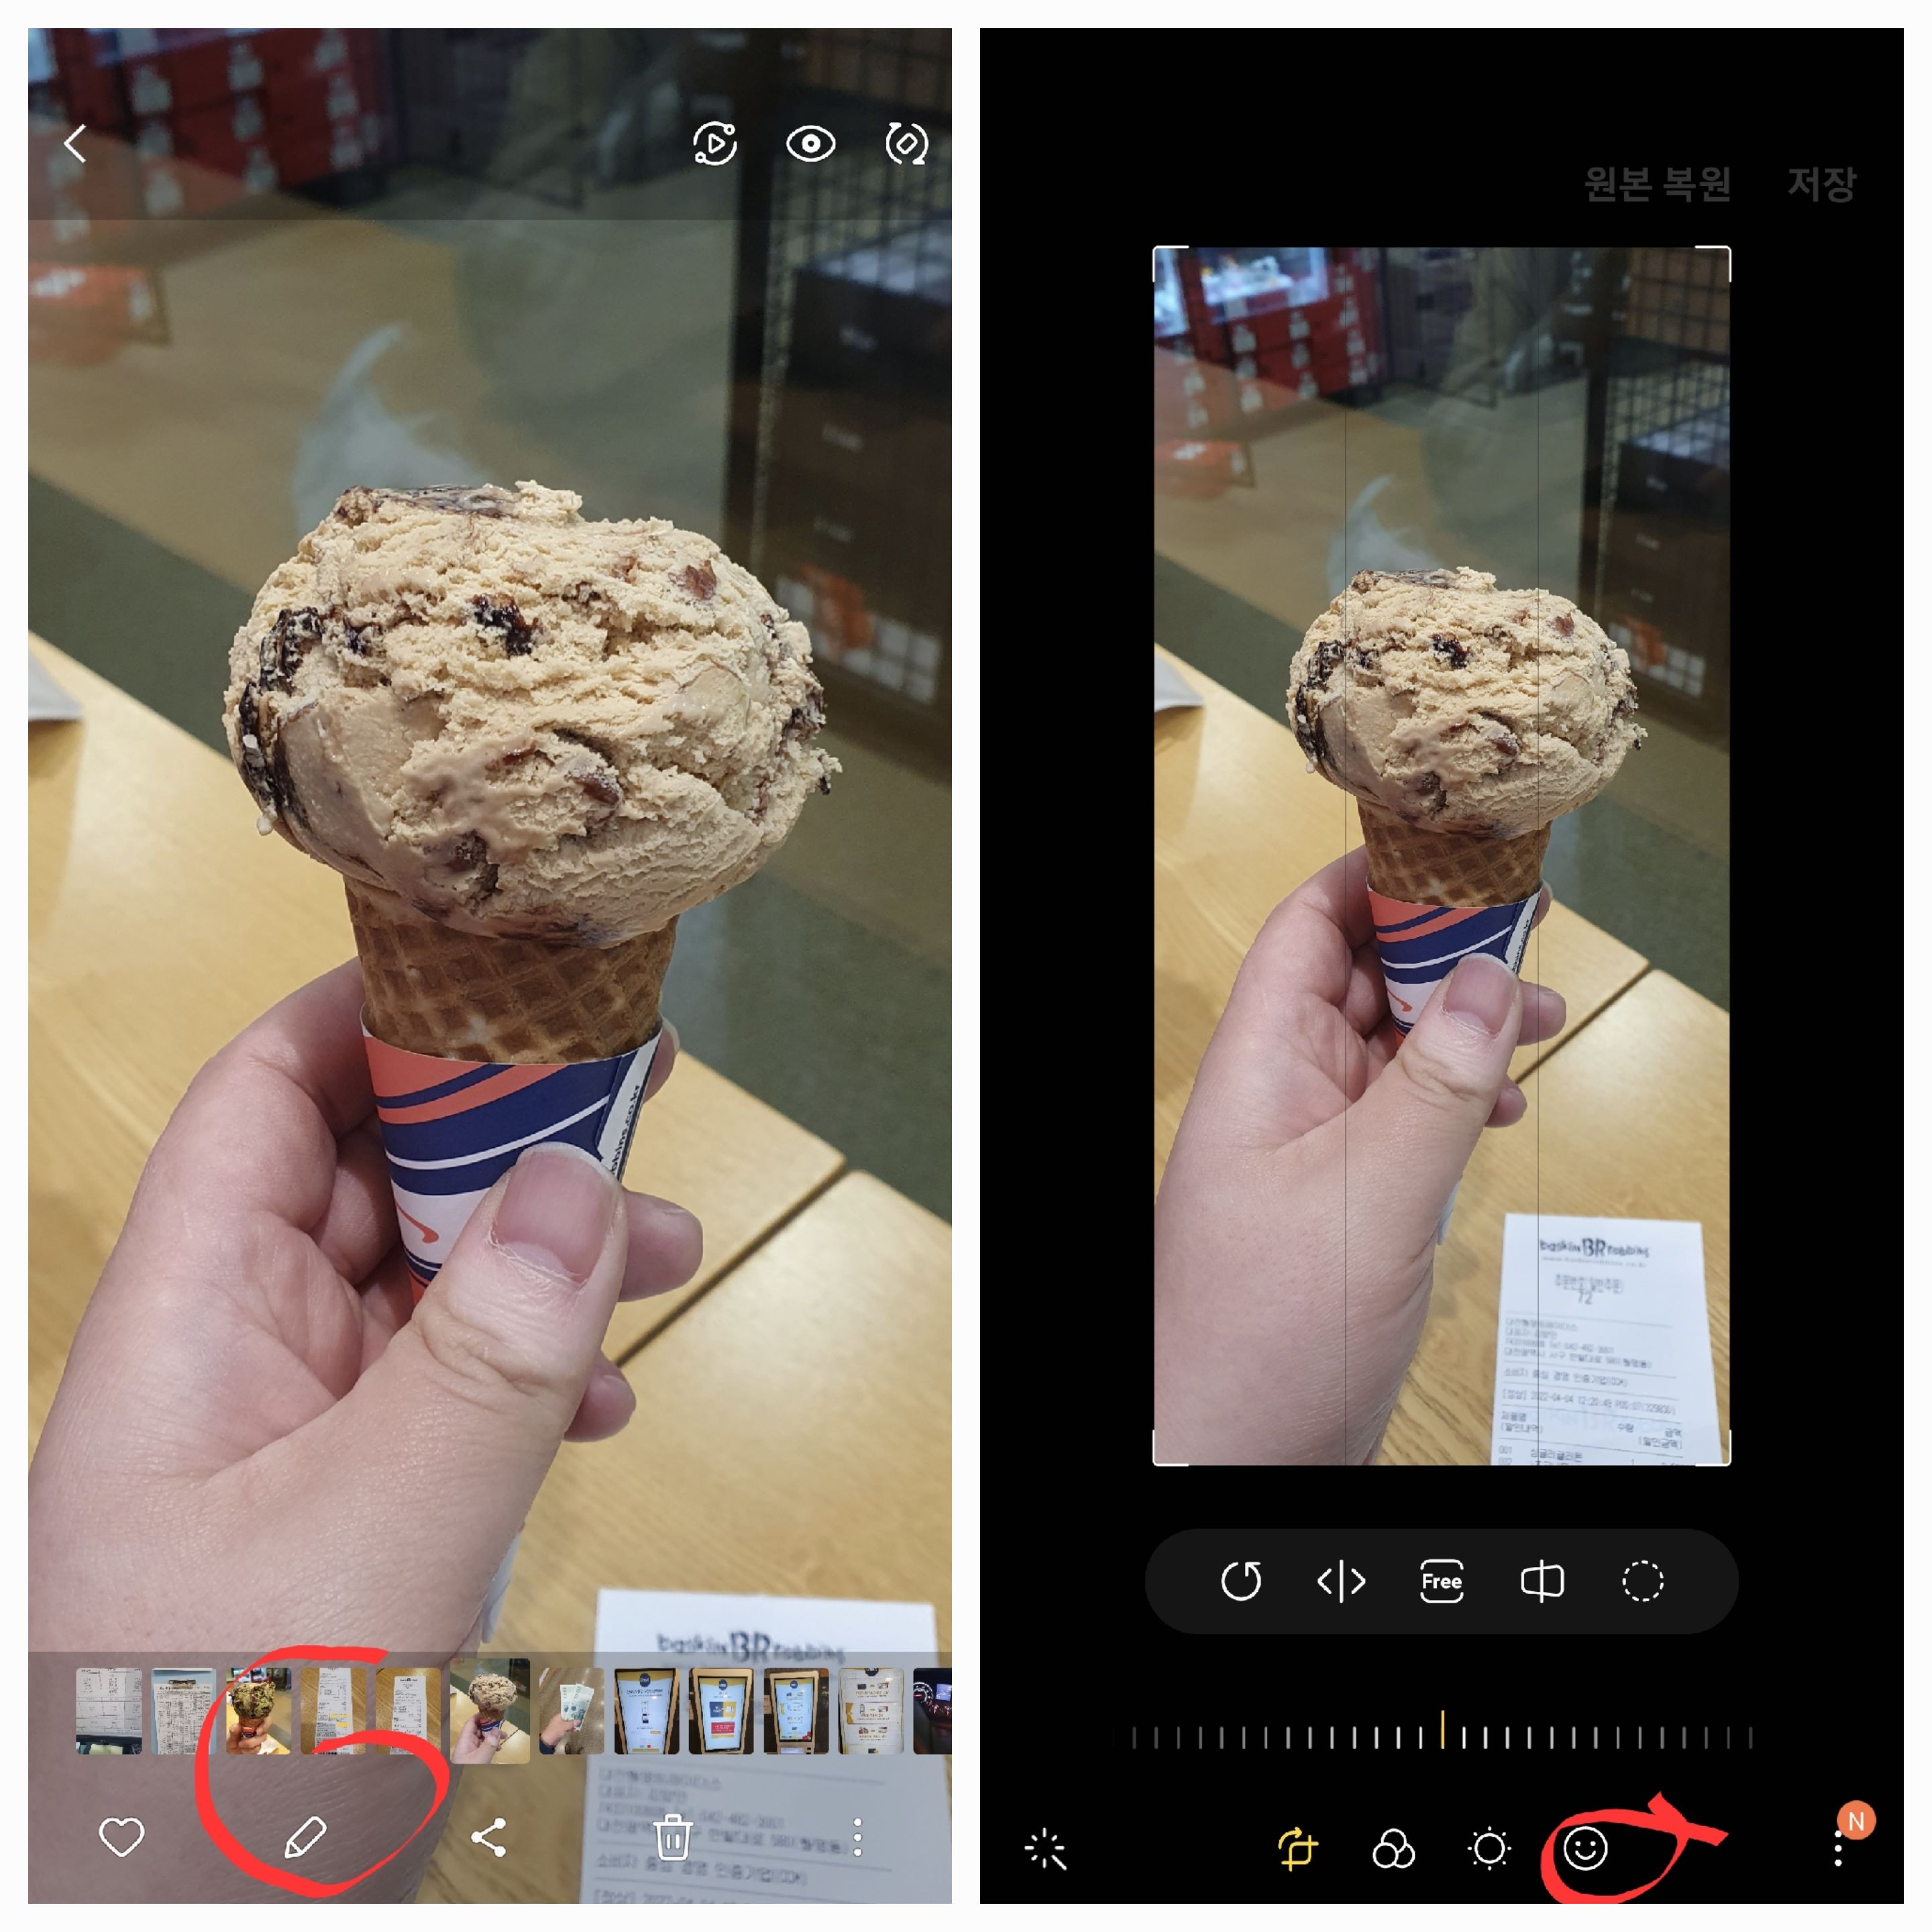 갤러리 앱에서 포토에디터 기능을 사용시 앱 중단됨.